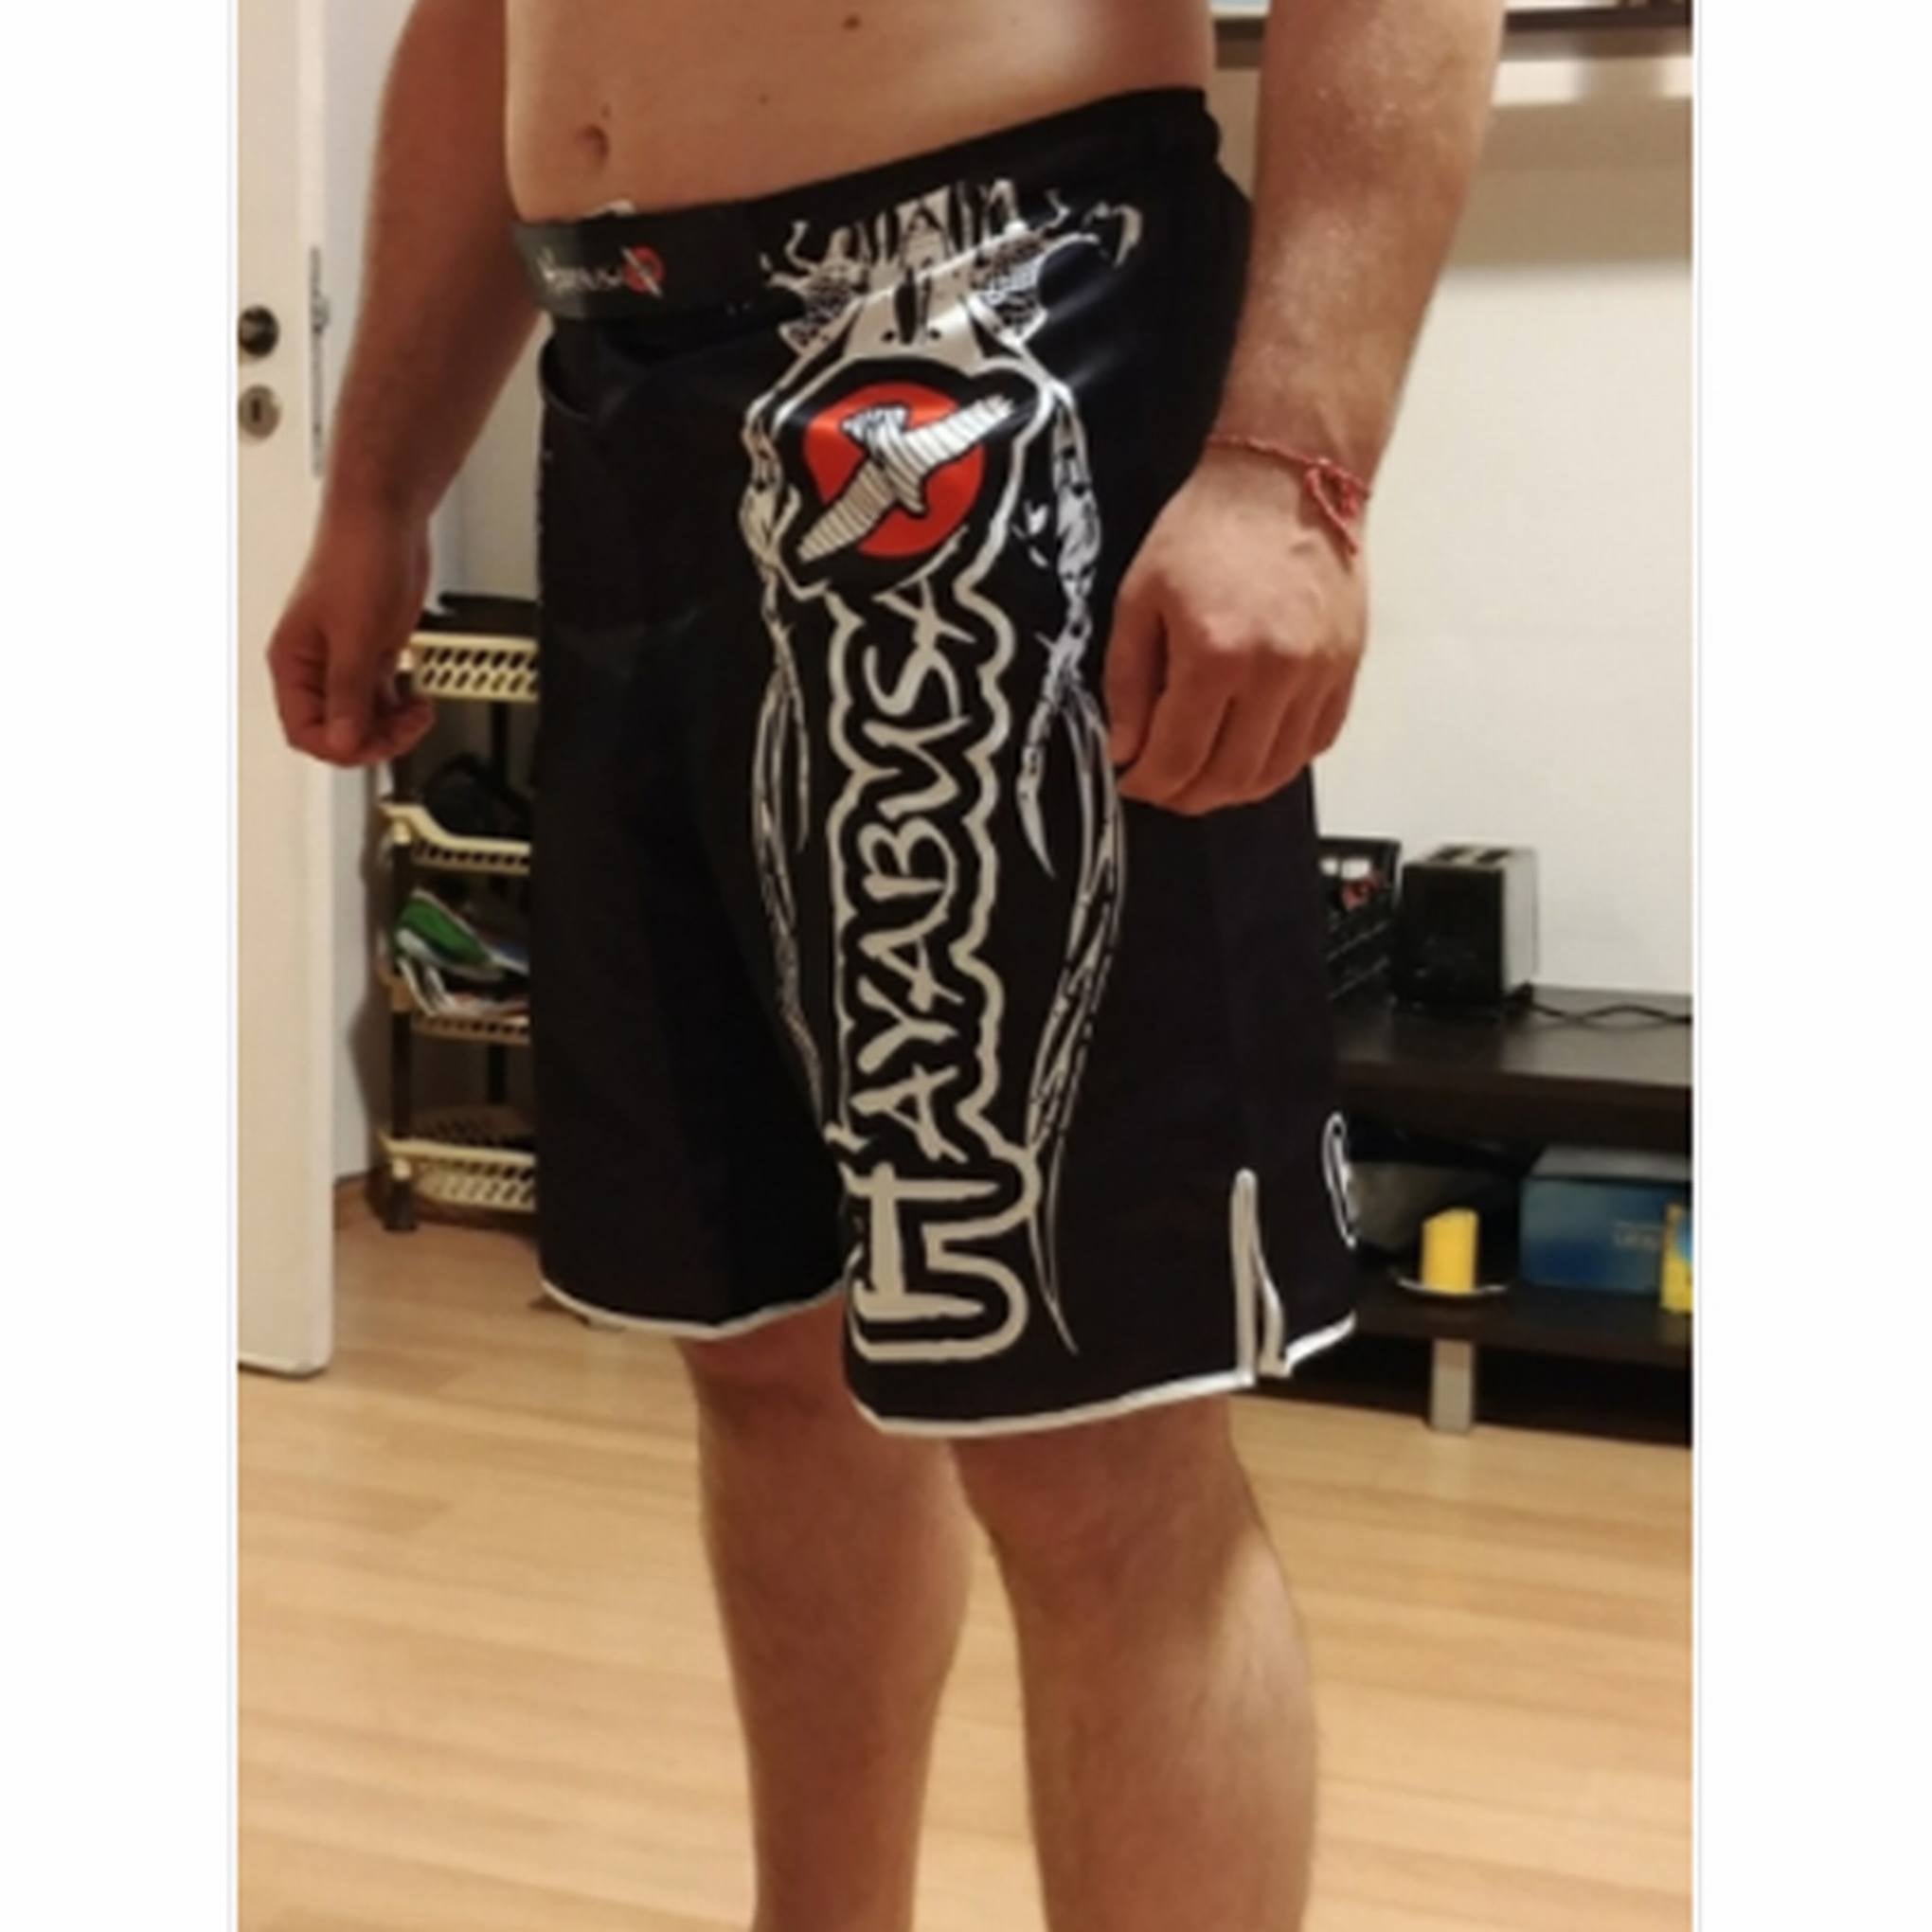 Pantalones Shorts de MMA La Muerte – Frikimanes